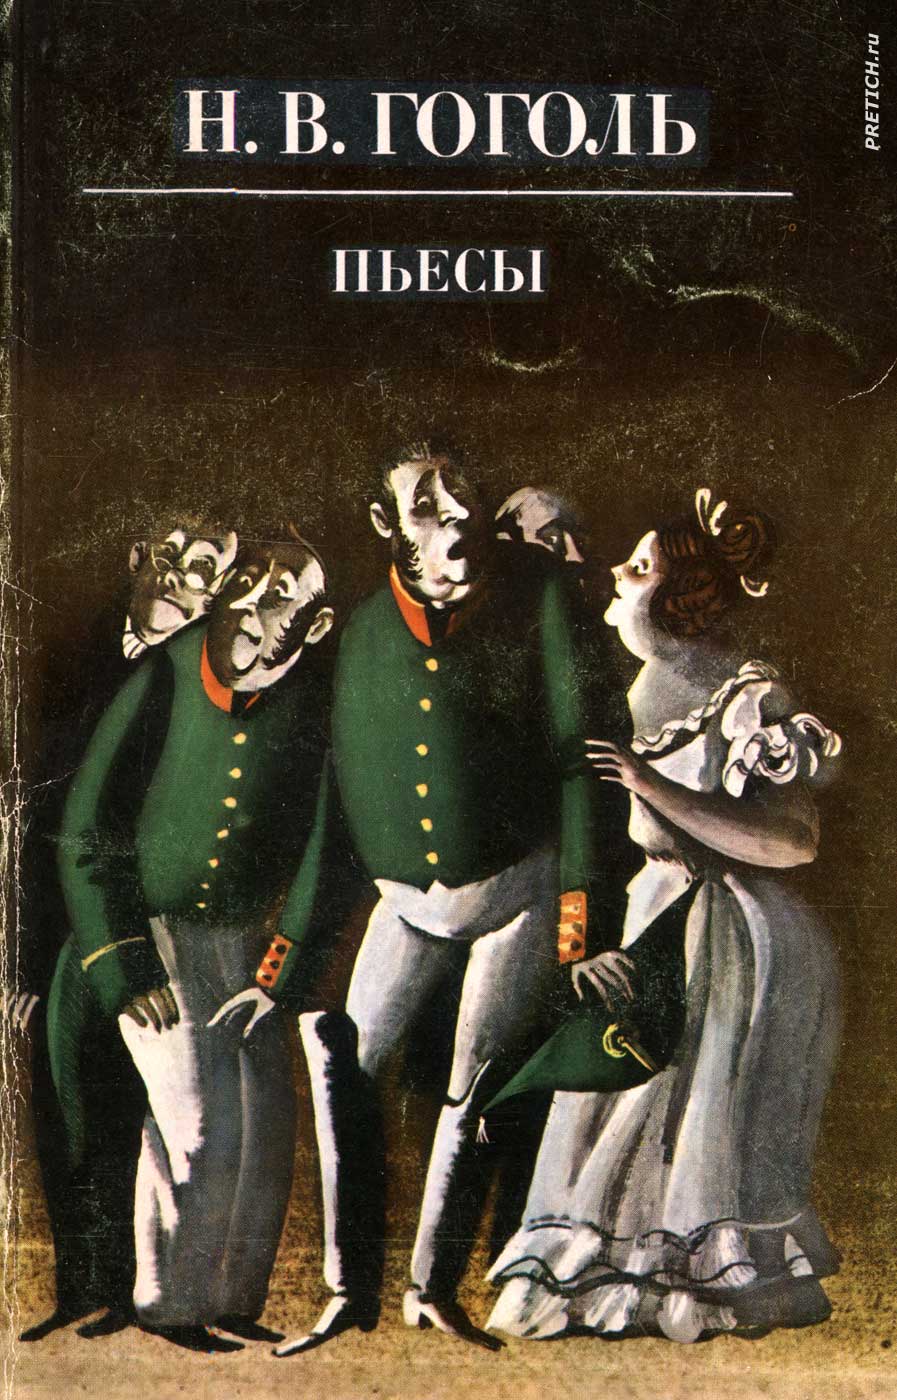 Н.В. Гоголь Пьесы обложка и иллюстрации 1983 год